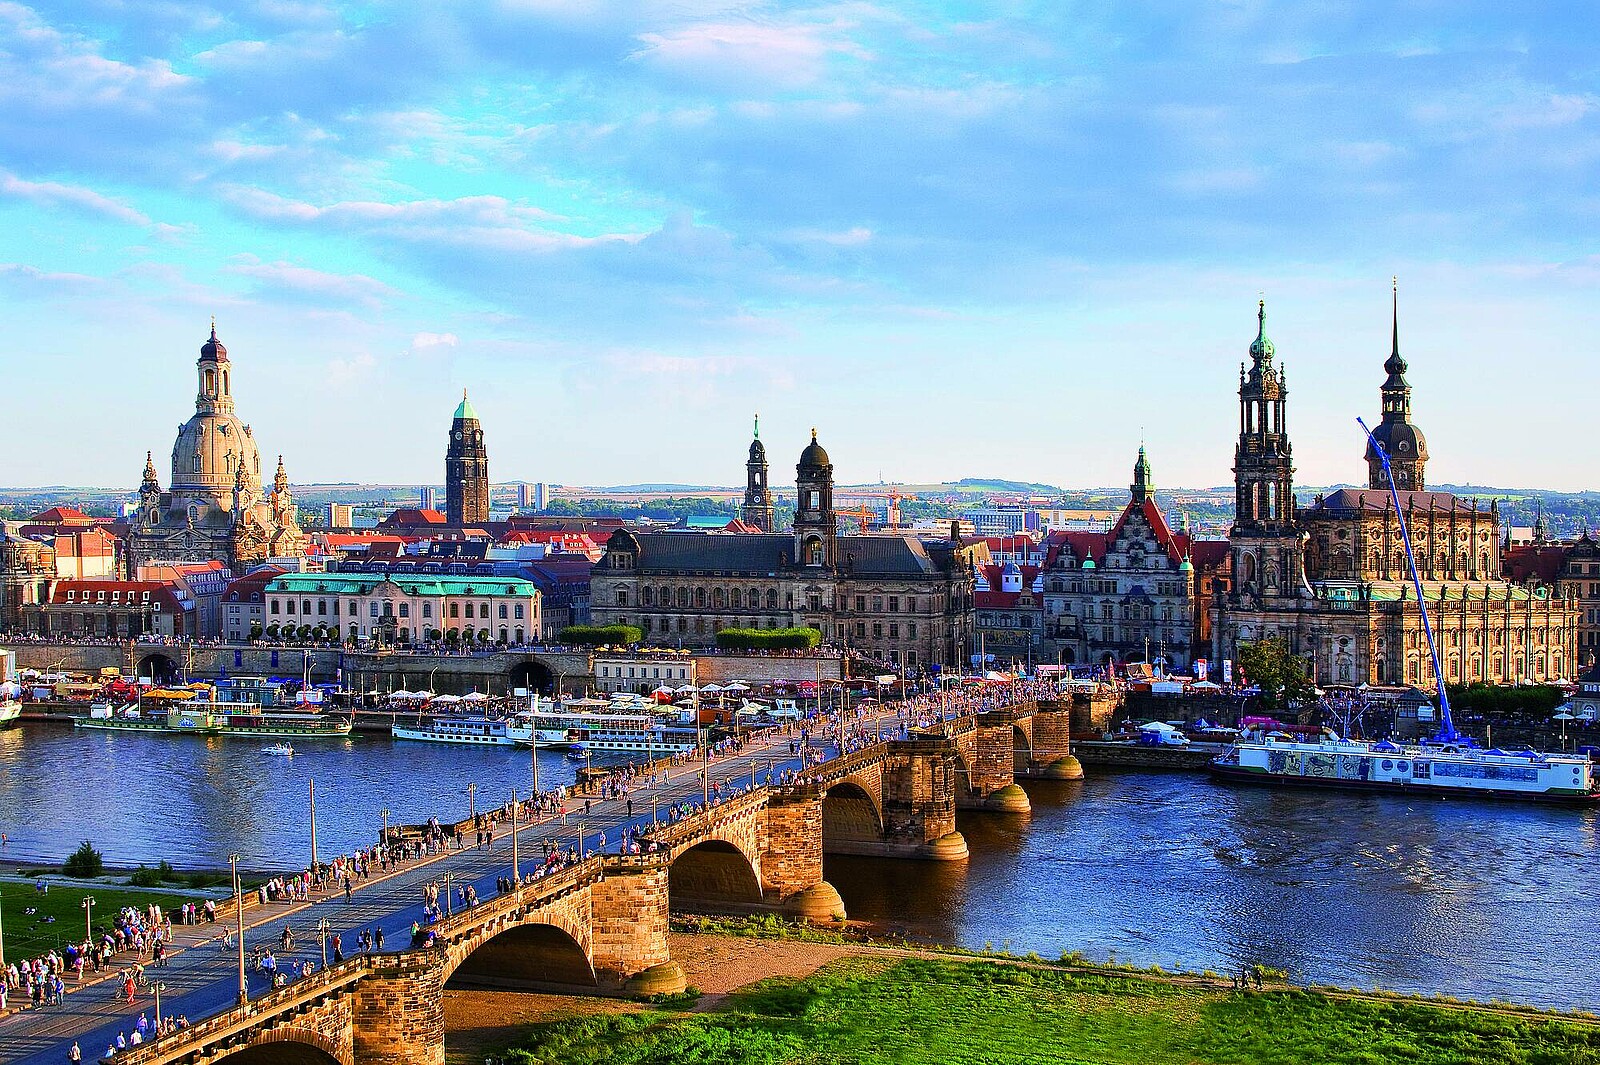 Erkunden Sie die historische Dresdner Altstadt während Ihrer Kurzreise oder Urlaub und entdecken Sie neben den klassischen Sehenswürdigkeiten wie Frauenkirche, Residenzschloss, Fürstenzug, Semperoper und Zwinger auch Ihre ganz persönlichen Highlights.